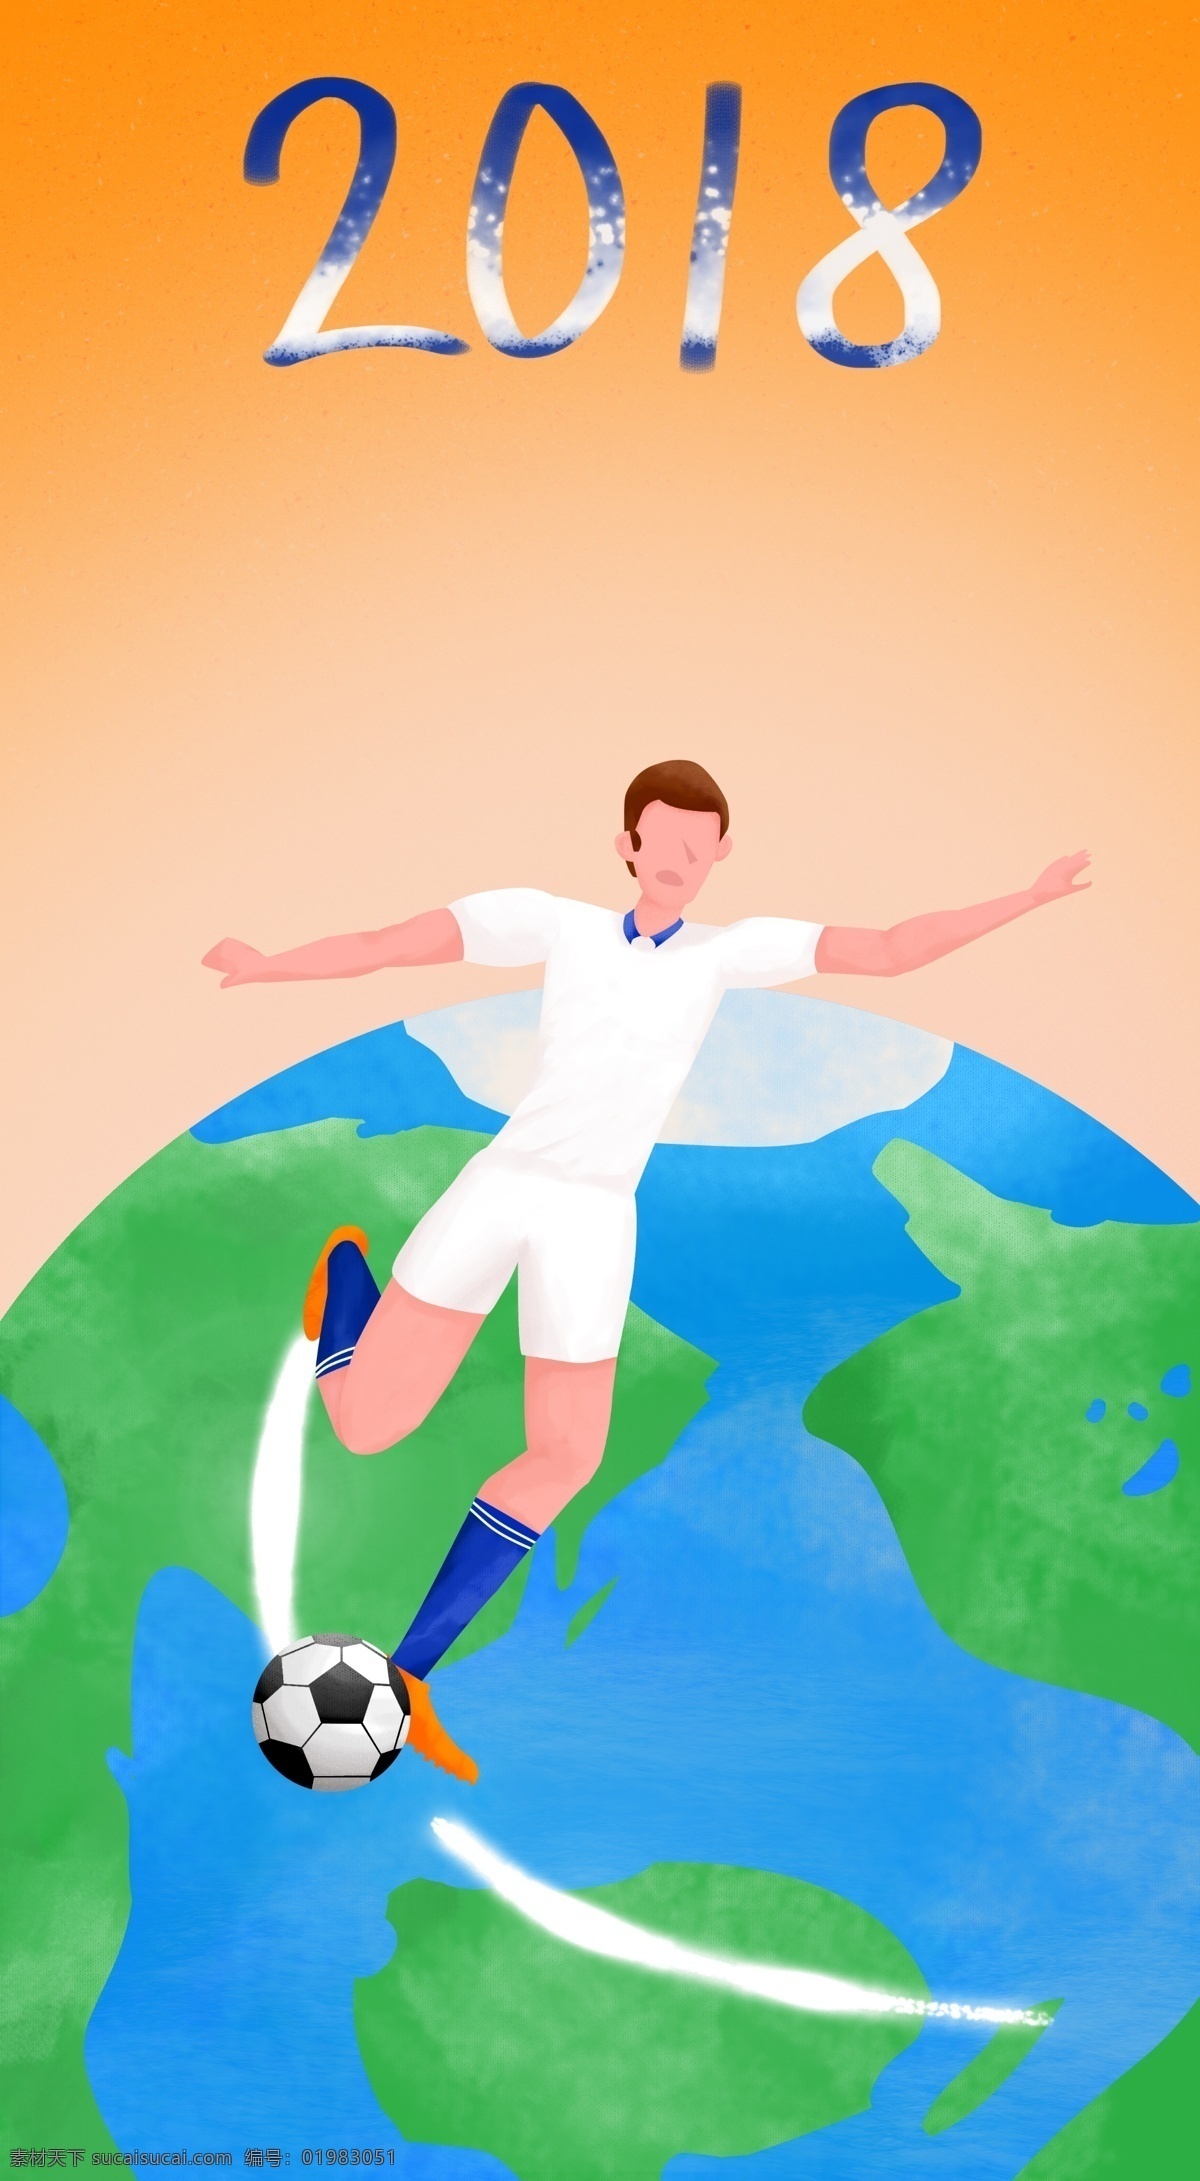 卡通 2018 世界 足联 比赛 广告 背景 胜利 地球 广告背景素材 国际足联 运动 健身 足球 健康 团队